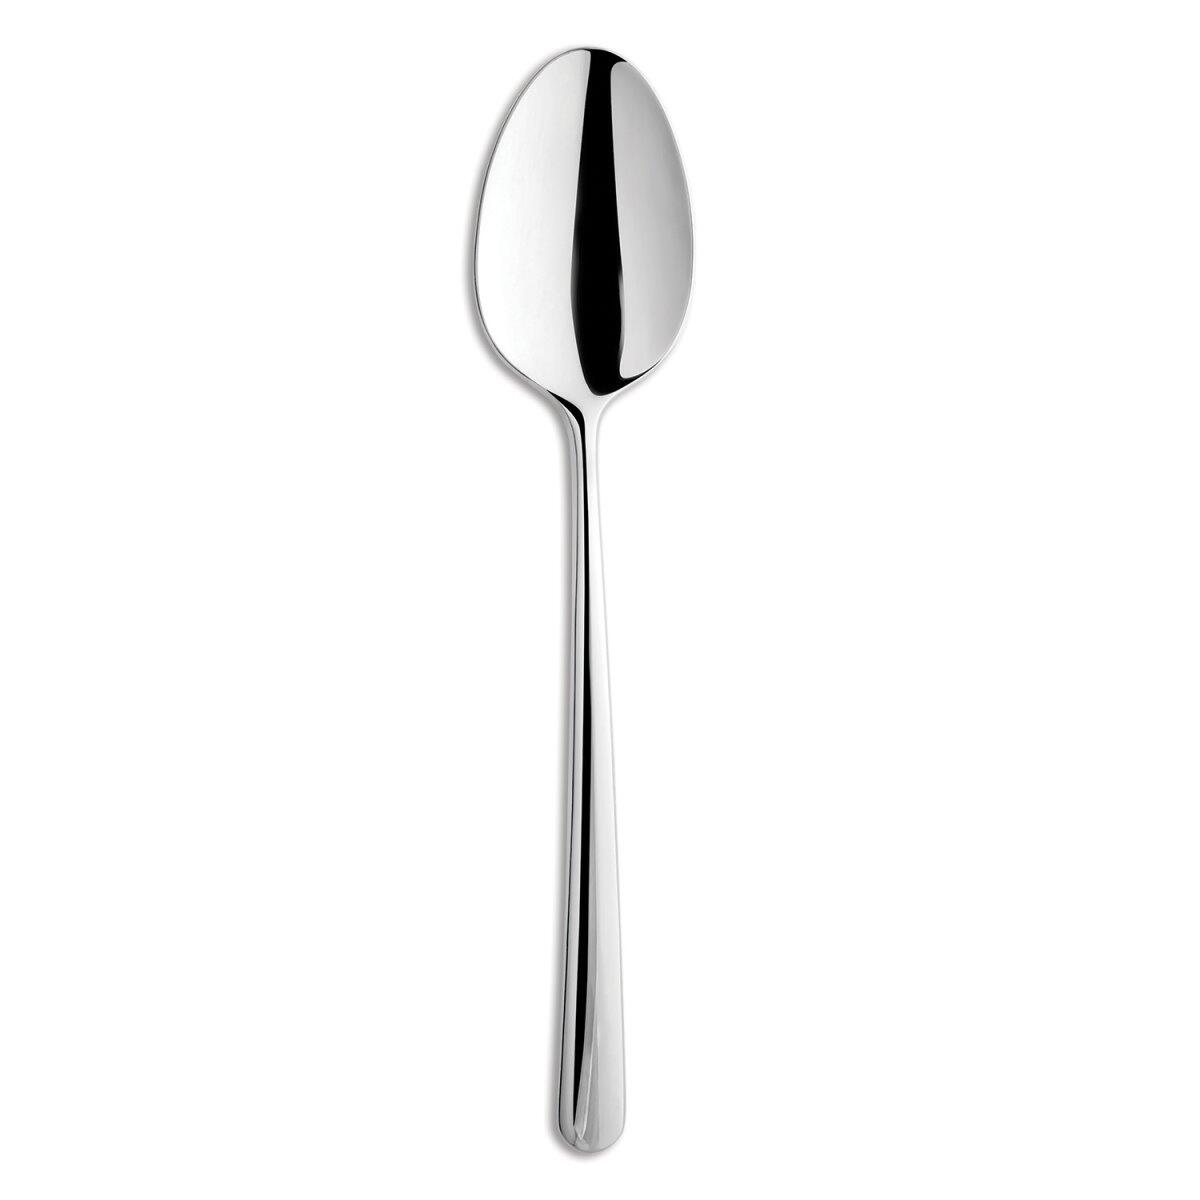 Aryıldız Nescafe Crotch Viole spoon 6 Pieces